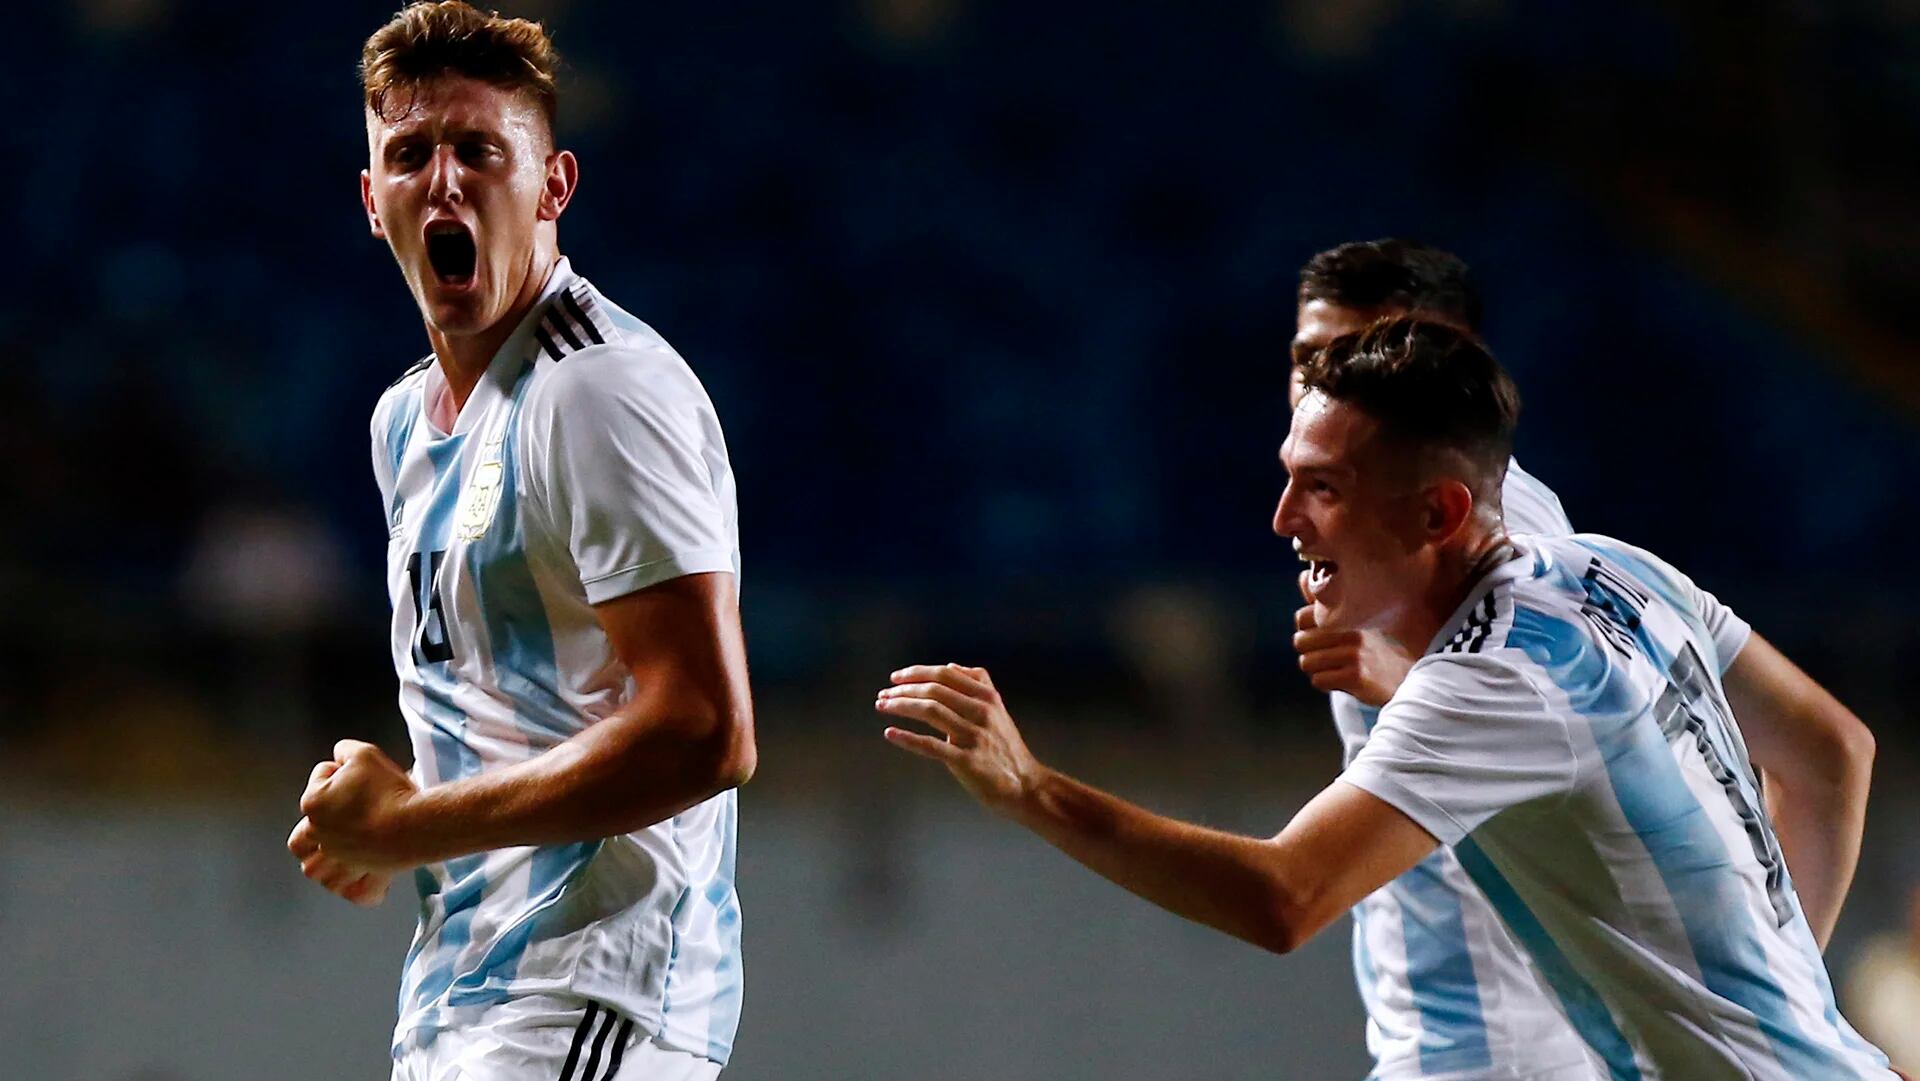 La selección argentina integra el Grupo F de la Copa del Mundo con Portugal, Corea del Sur y Sudáfrica